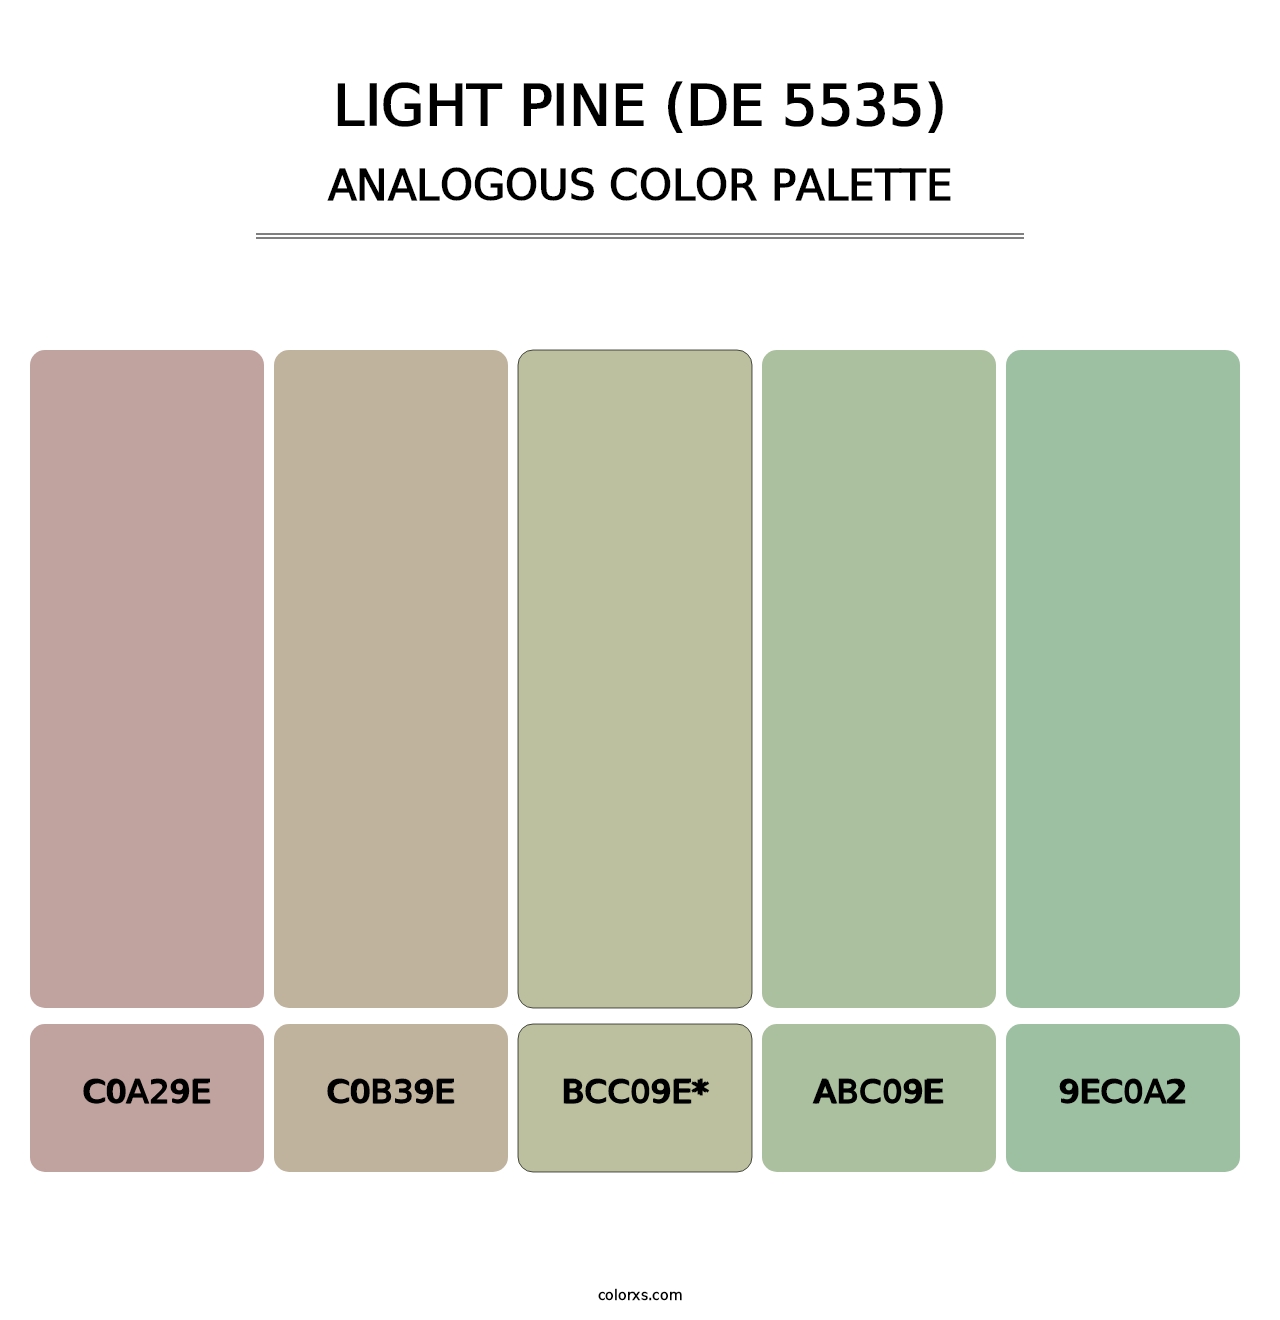 Light Pine (DE 5535) - Analogous Color Palette